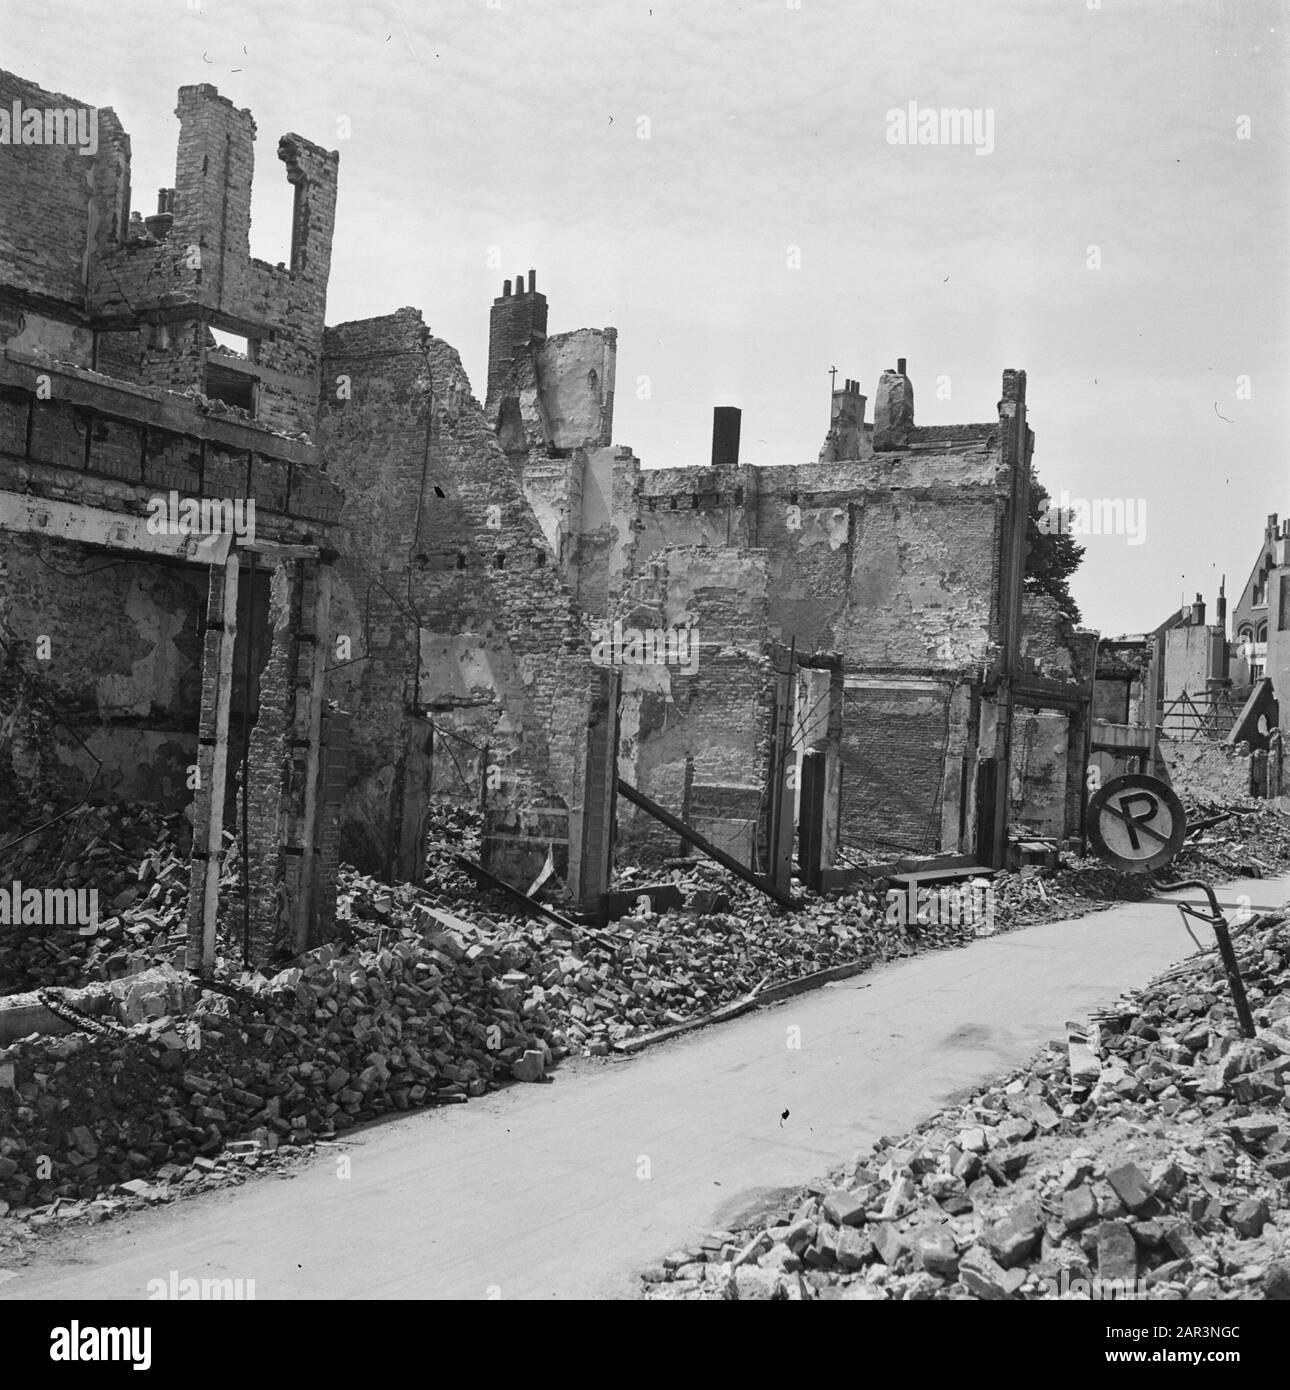 Vernielingen: Arnhem  [destroyed buildings] Date: June 1945 Location: Arnhem Keywords: buildings, Second World War, destruction Stock Photo